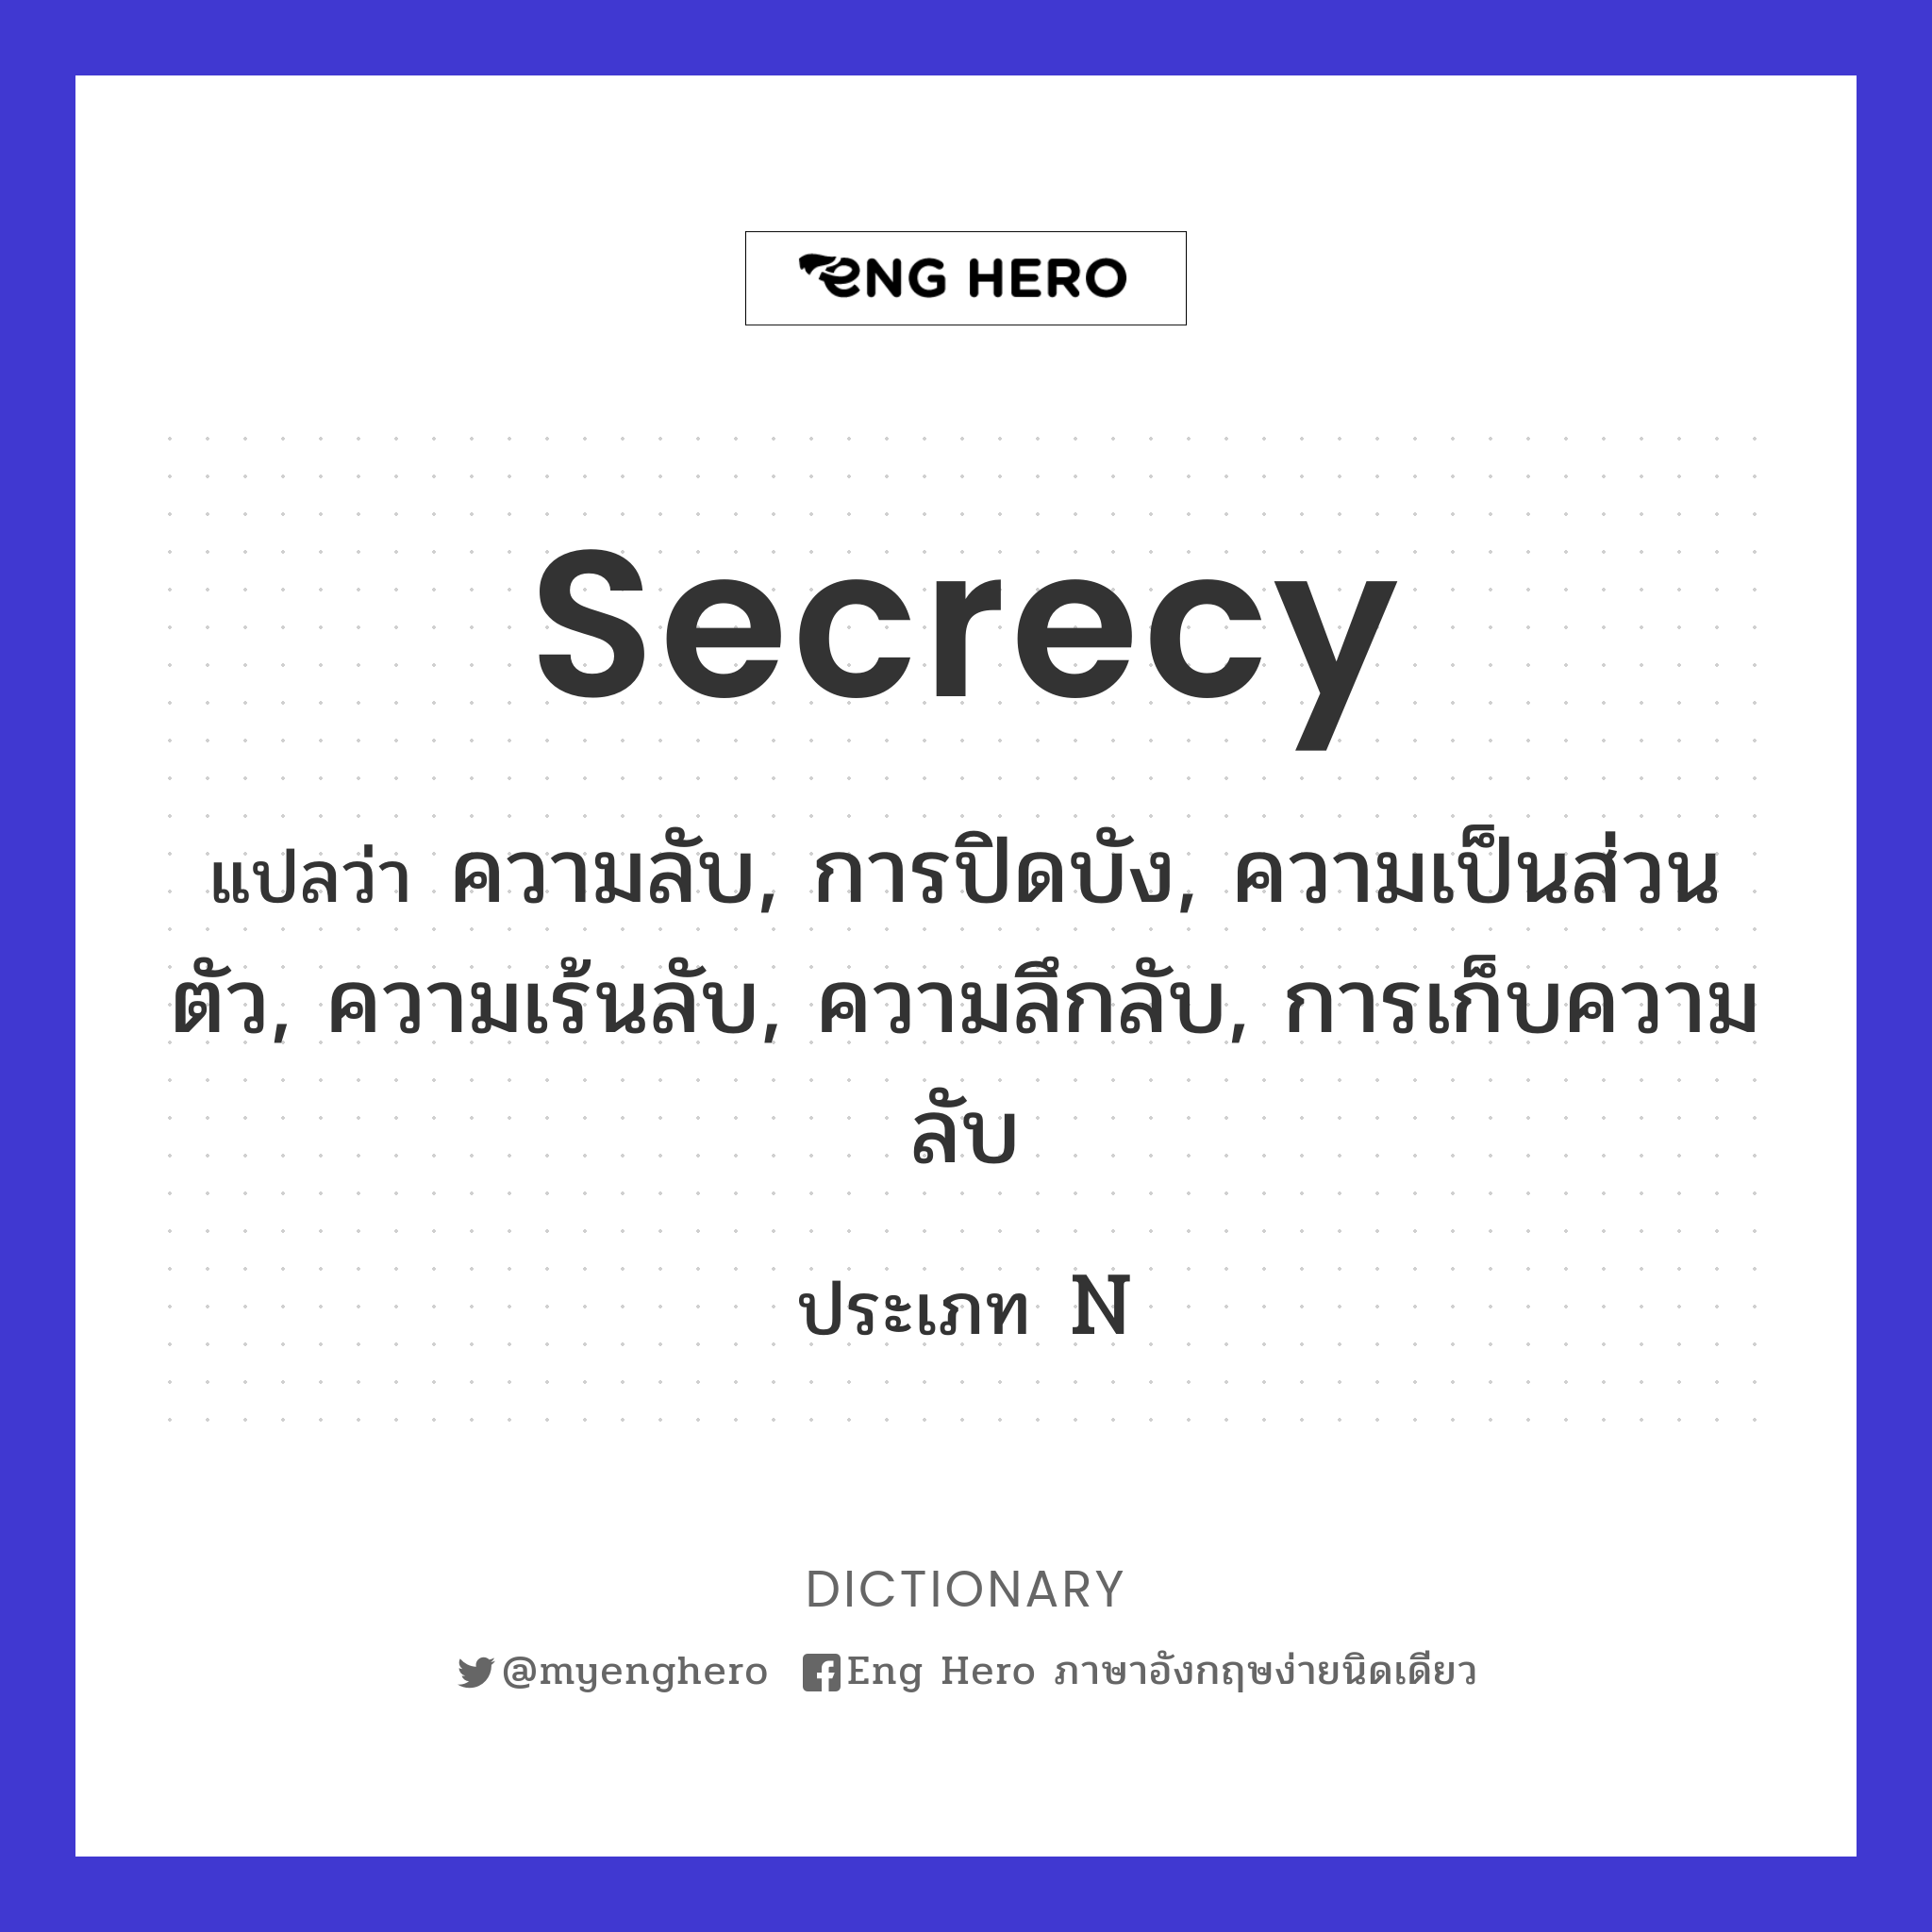 secrecy